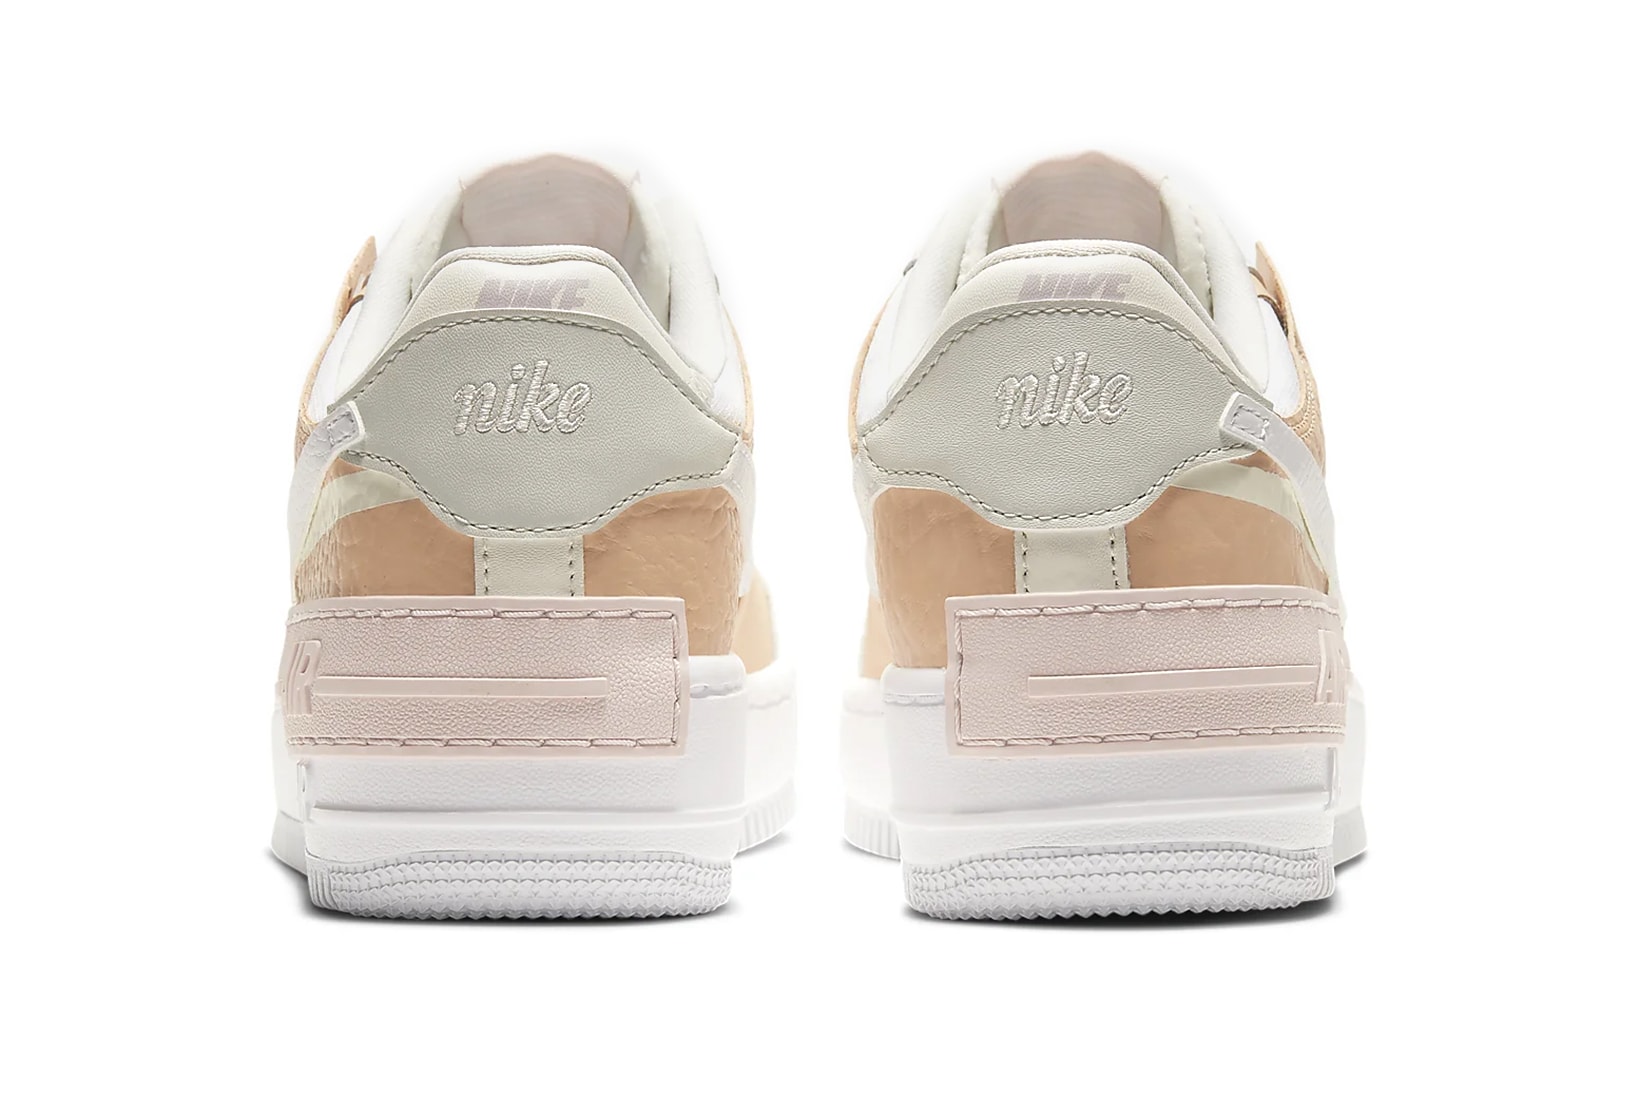 nike air force 1 shadow womens sneakers peach pastel pink off white brown shoes footwear sneakerhead